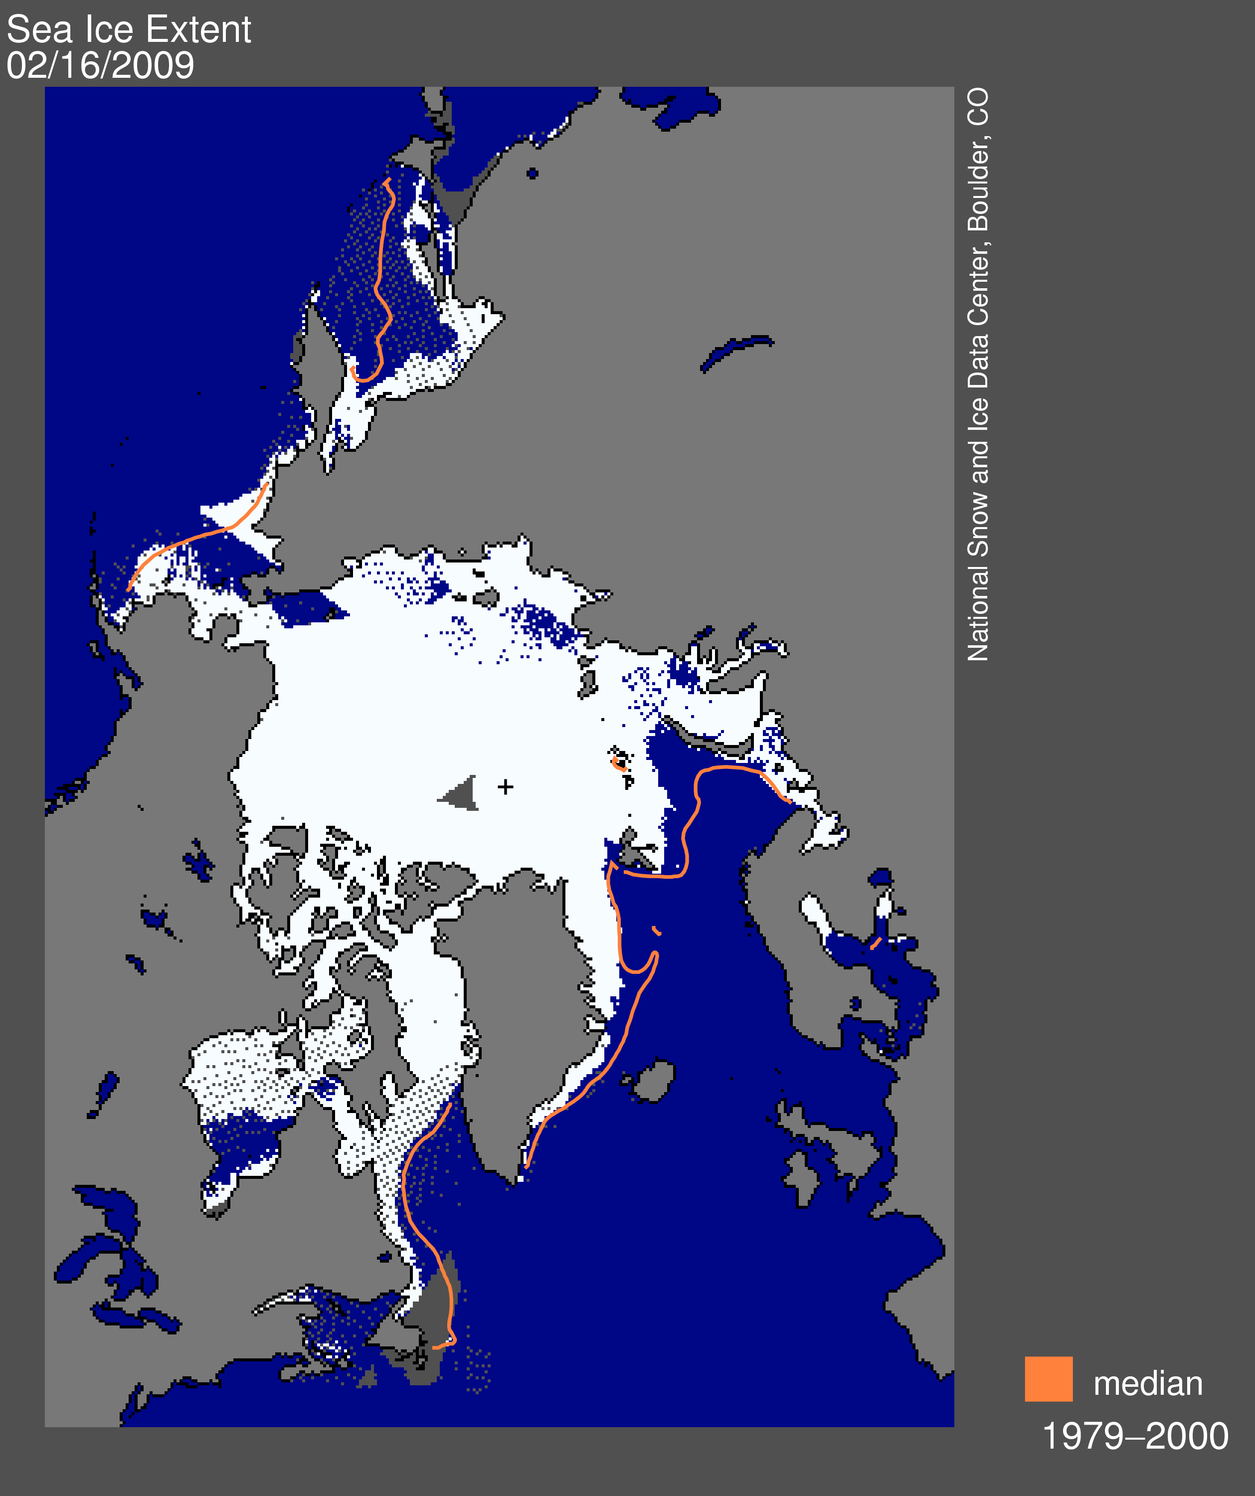 Sea ice extent error